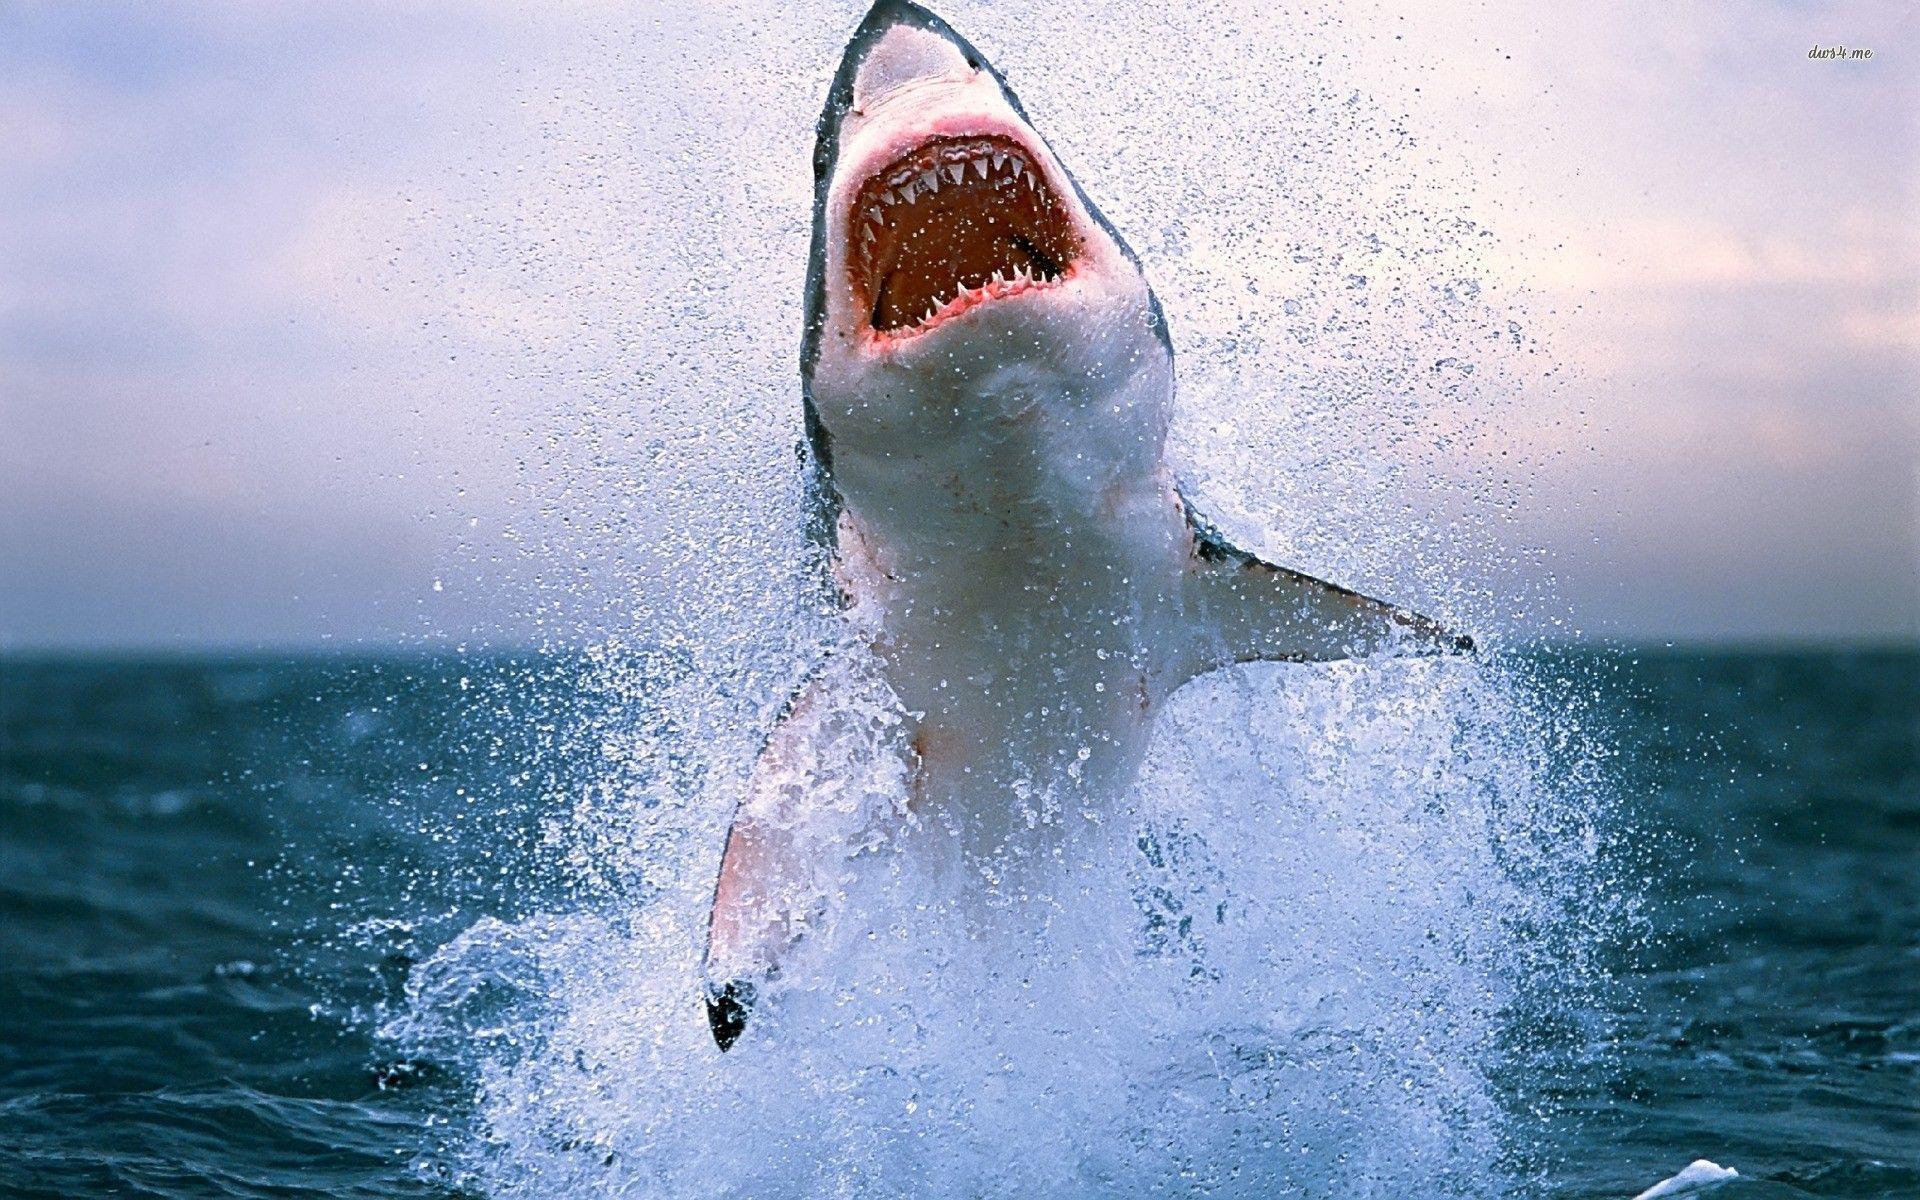 Wallpaper For > Great White Shark iPhone Wallpaper